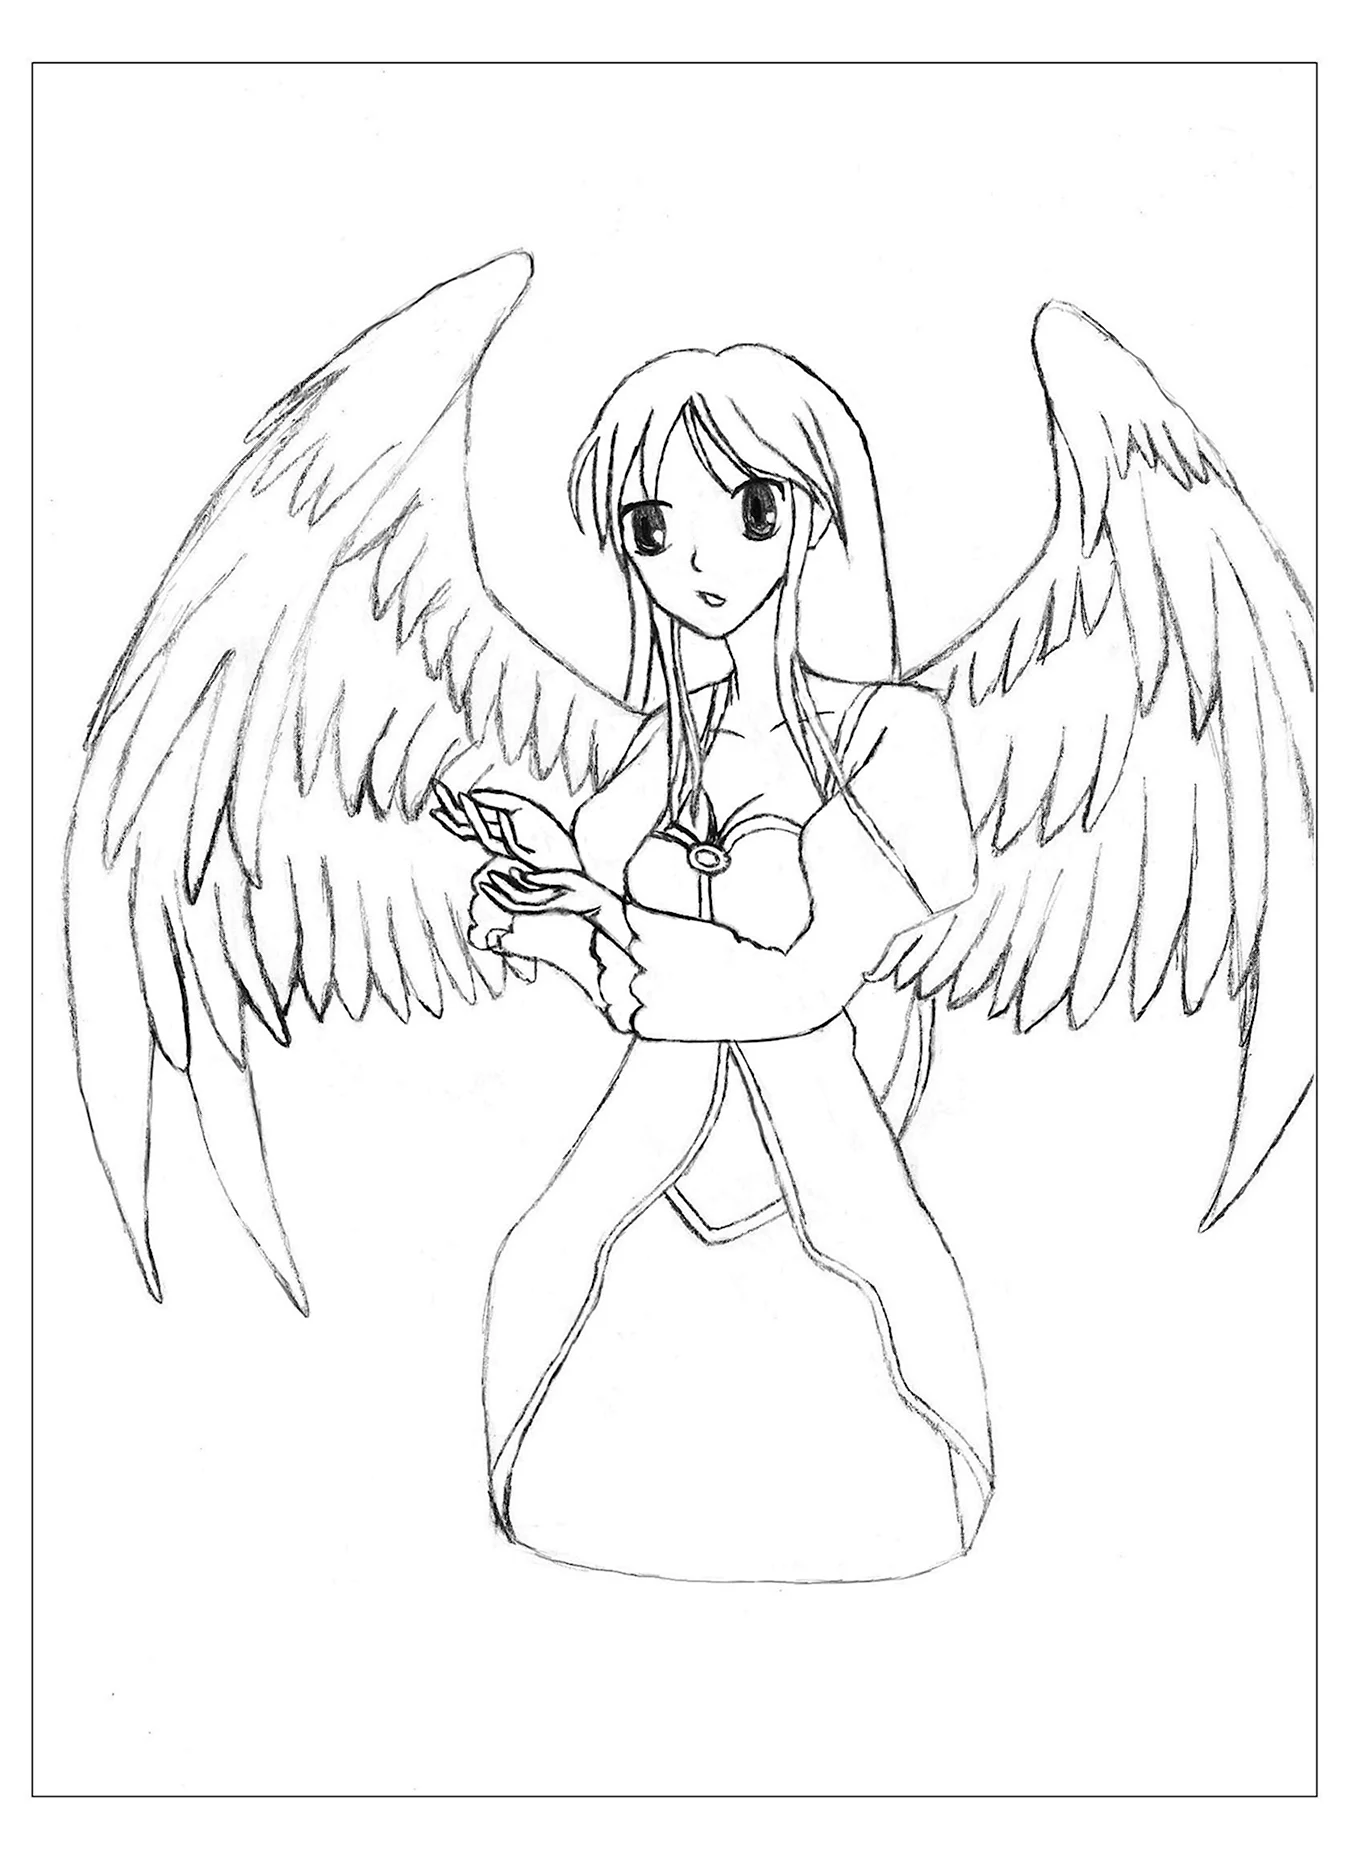 Ангел рисунок карандашом для срисовки. Для срисовки